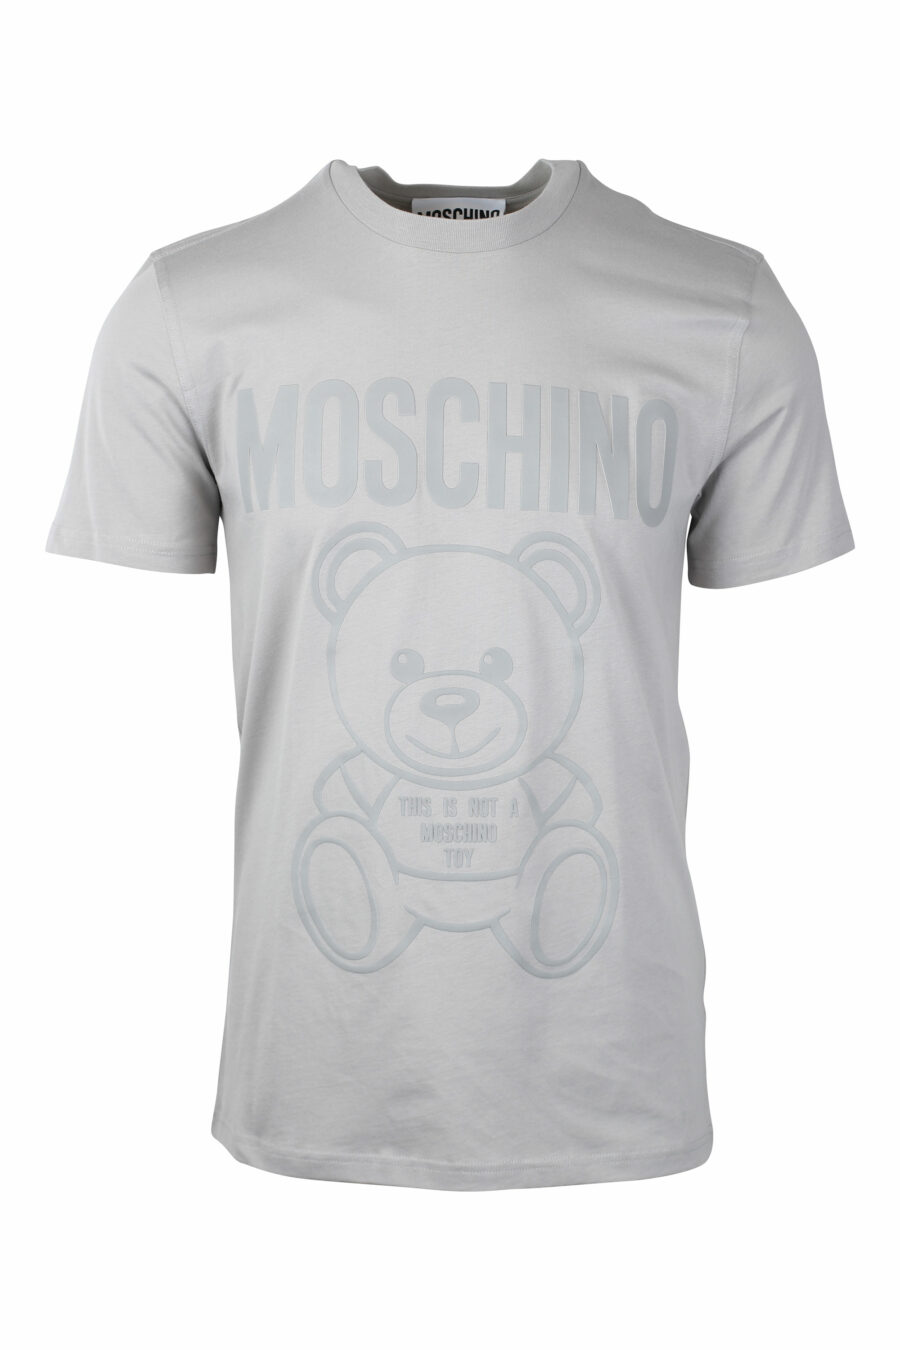 Camiseta gris con maxilogo oso monocromático - IMG 1397